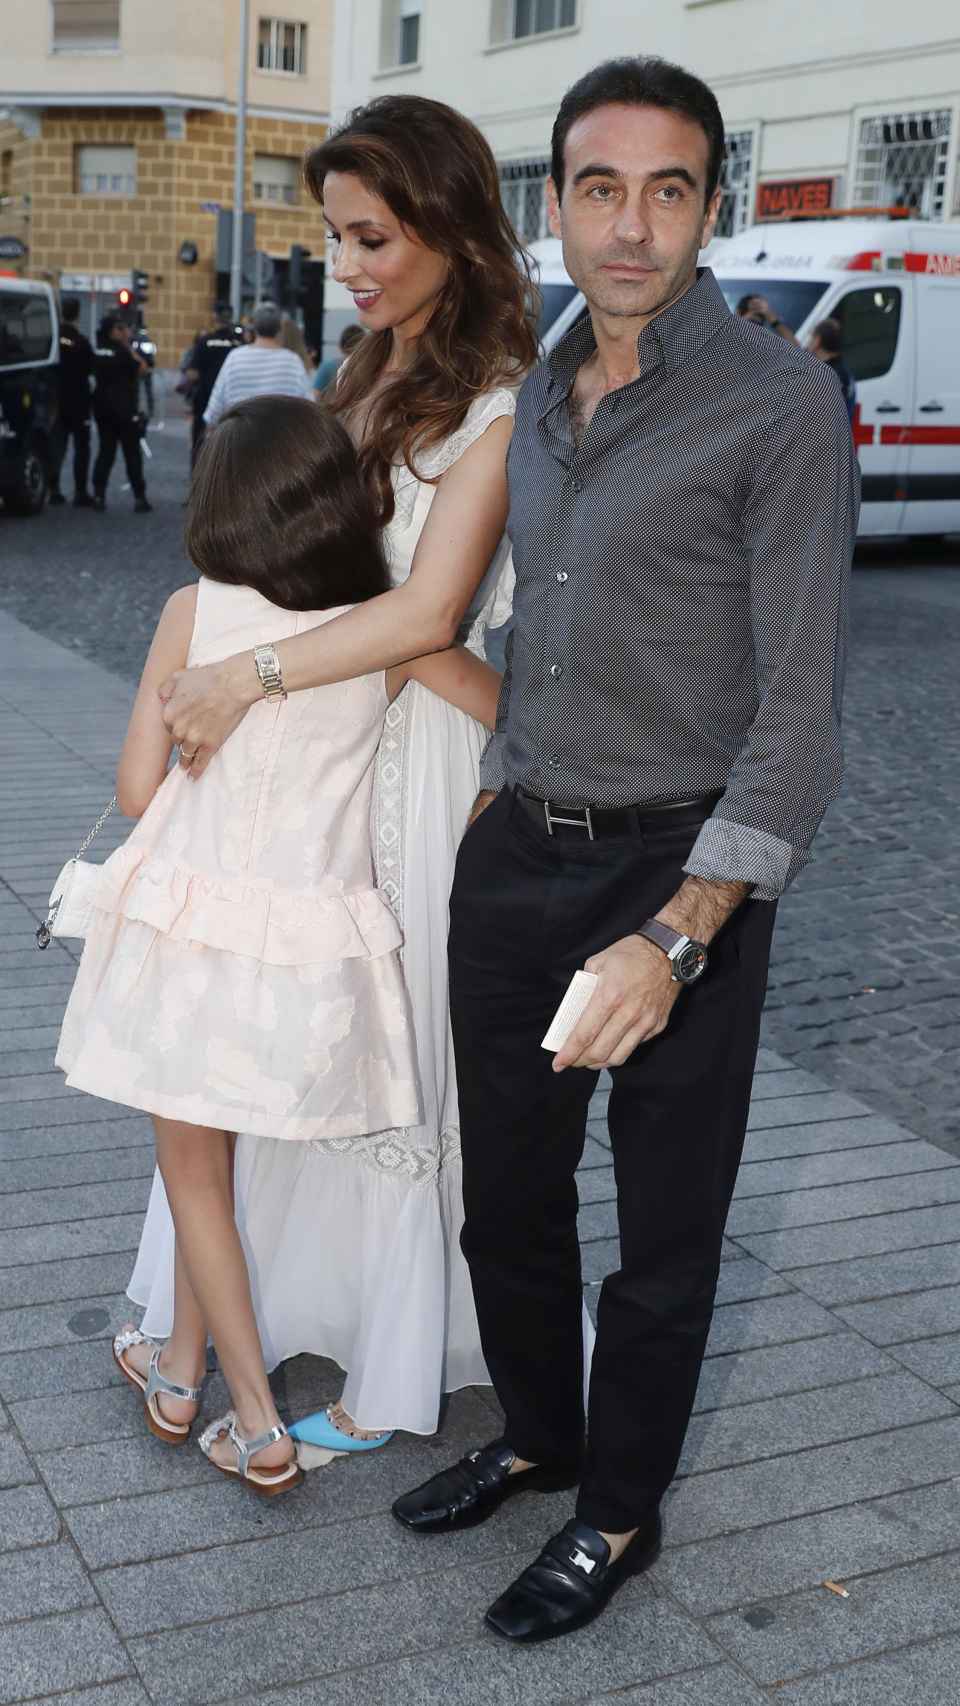 Paloma Cuevas y Enrique Ponce en imagen junto a una de sus dos hijas.